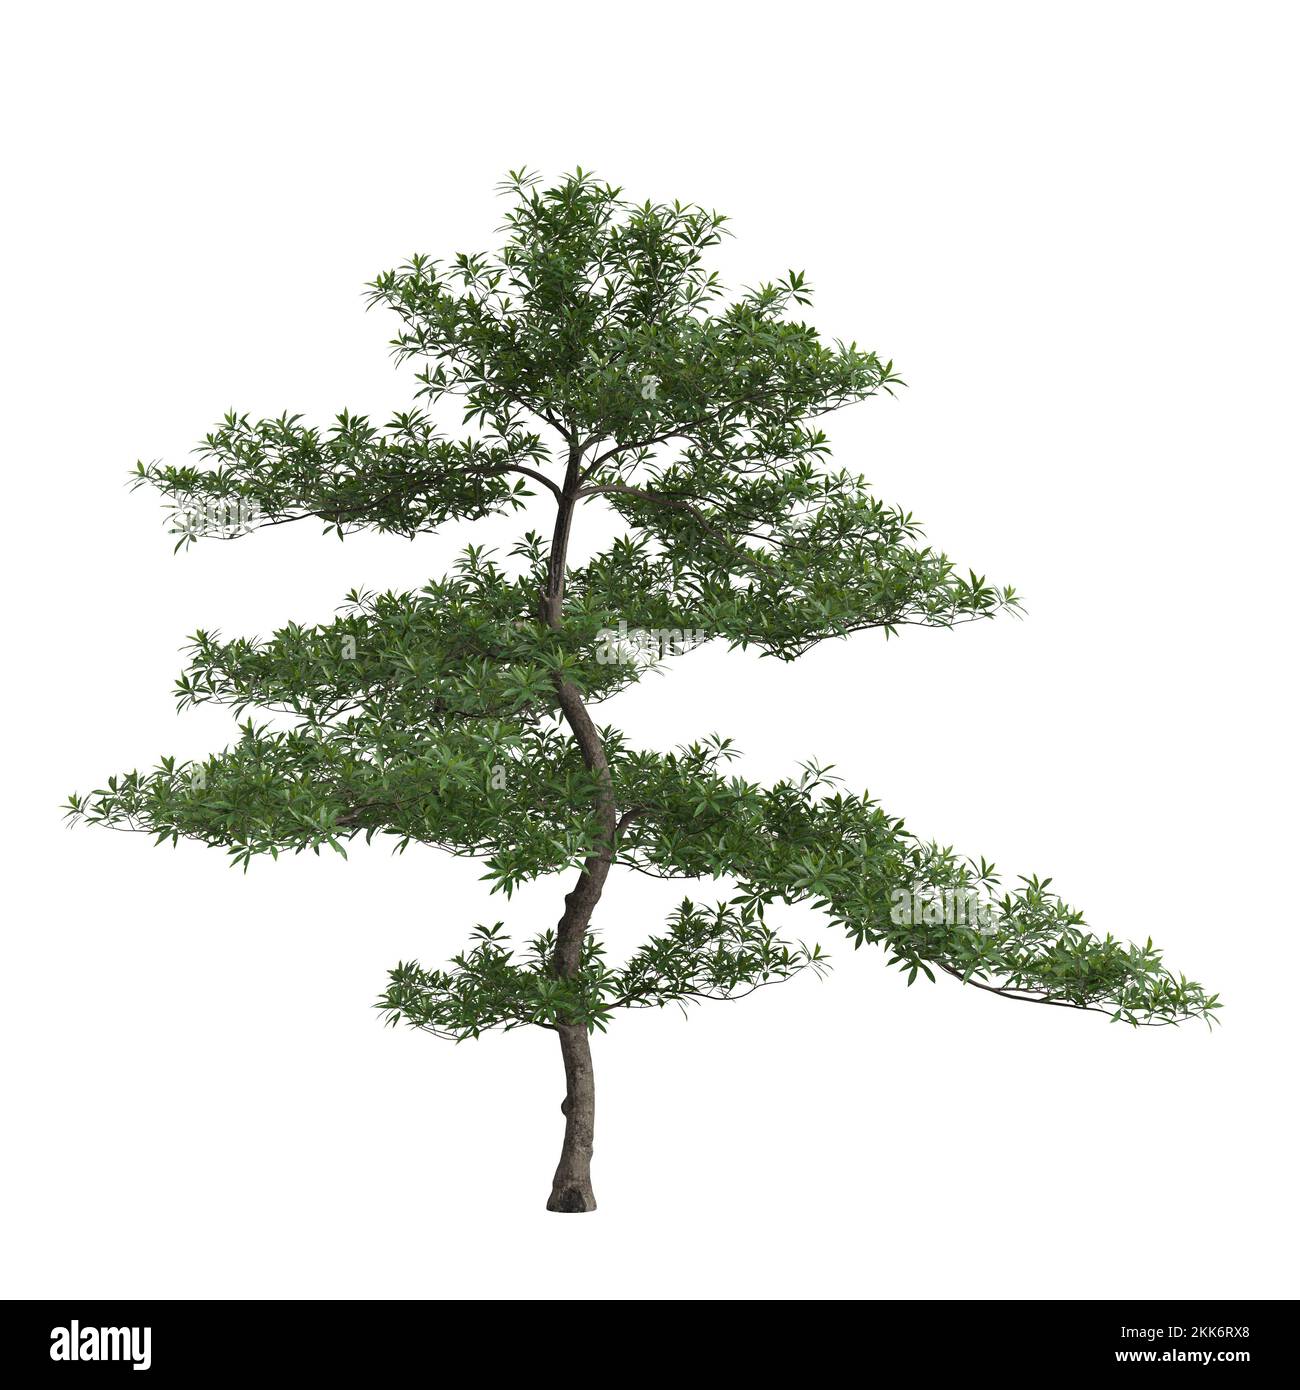 3d illustration of elaeocarpus hainanensis tree isolated on white background Stock Photo